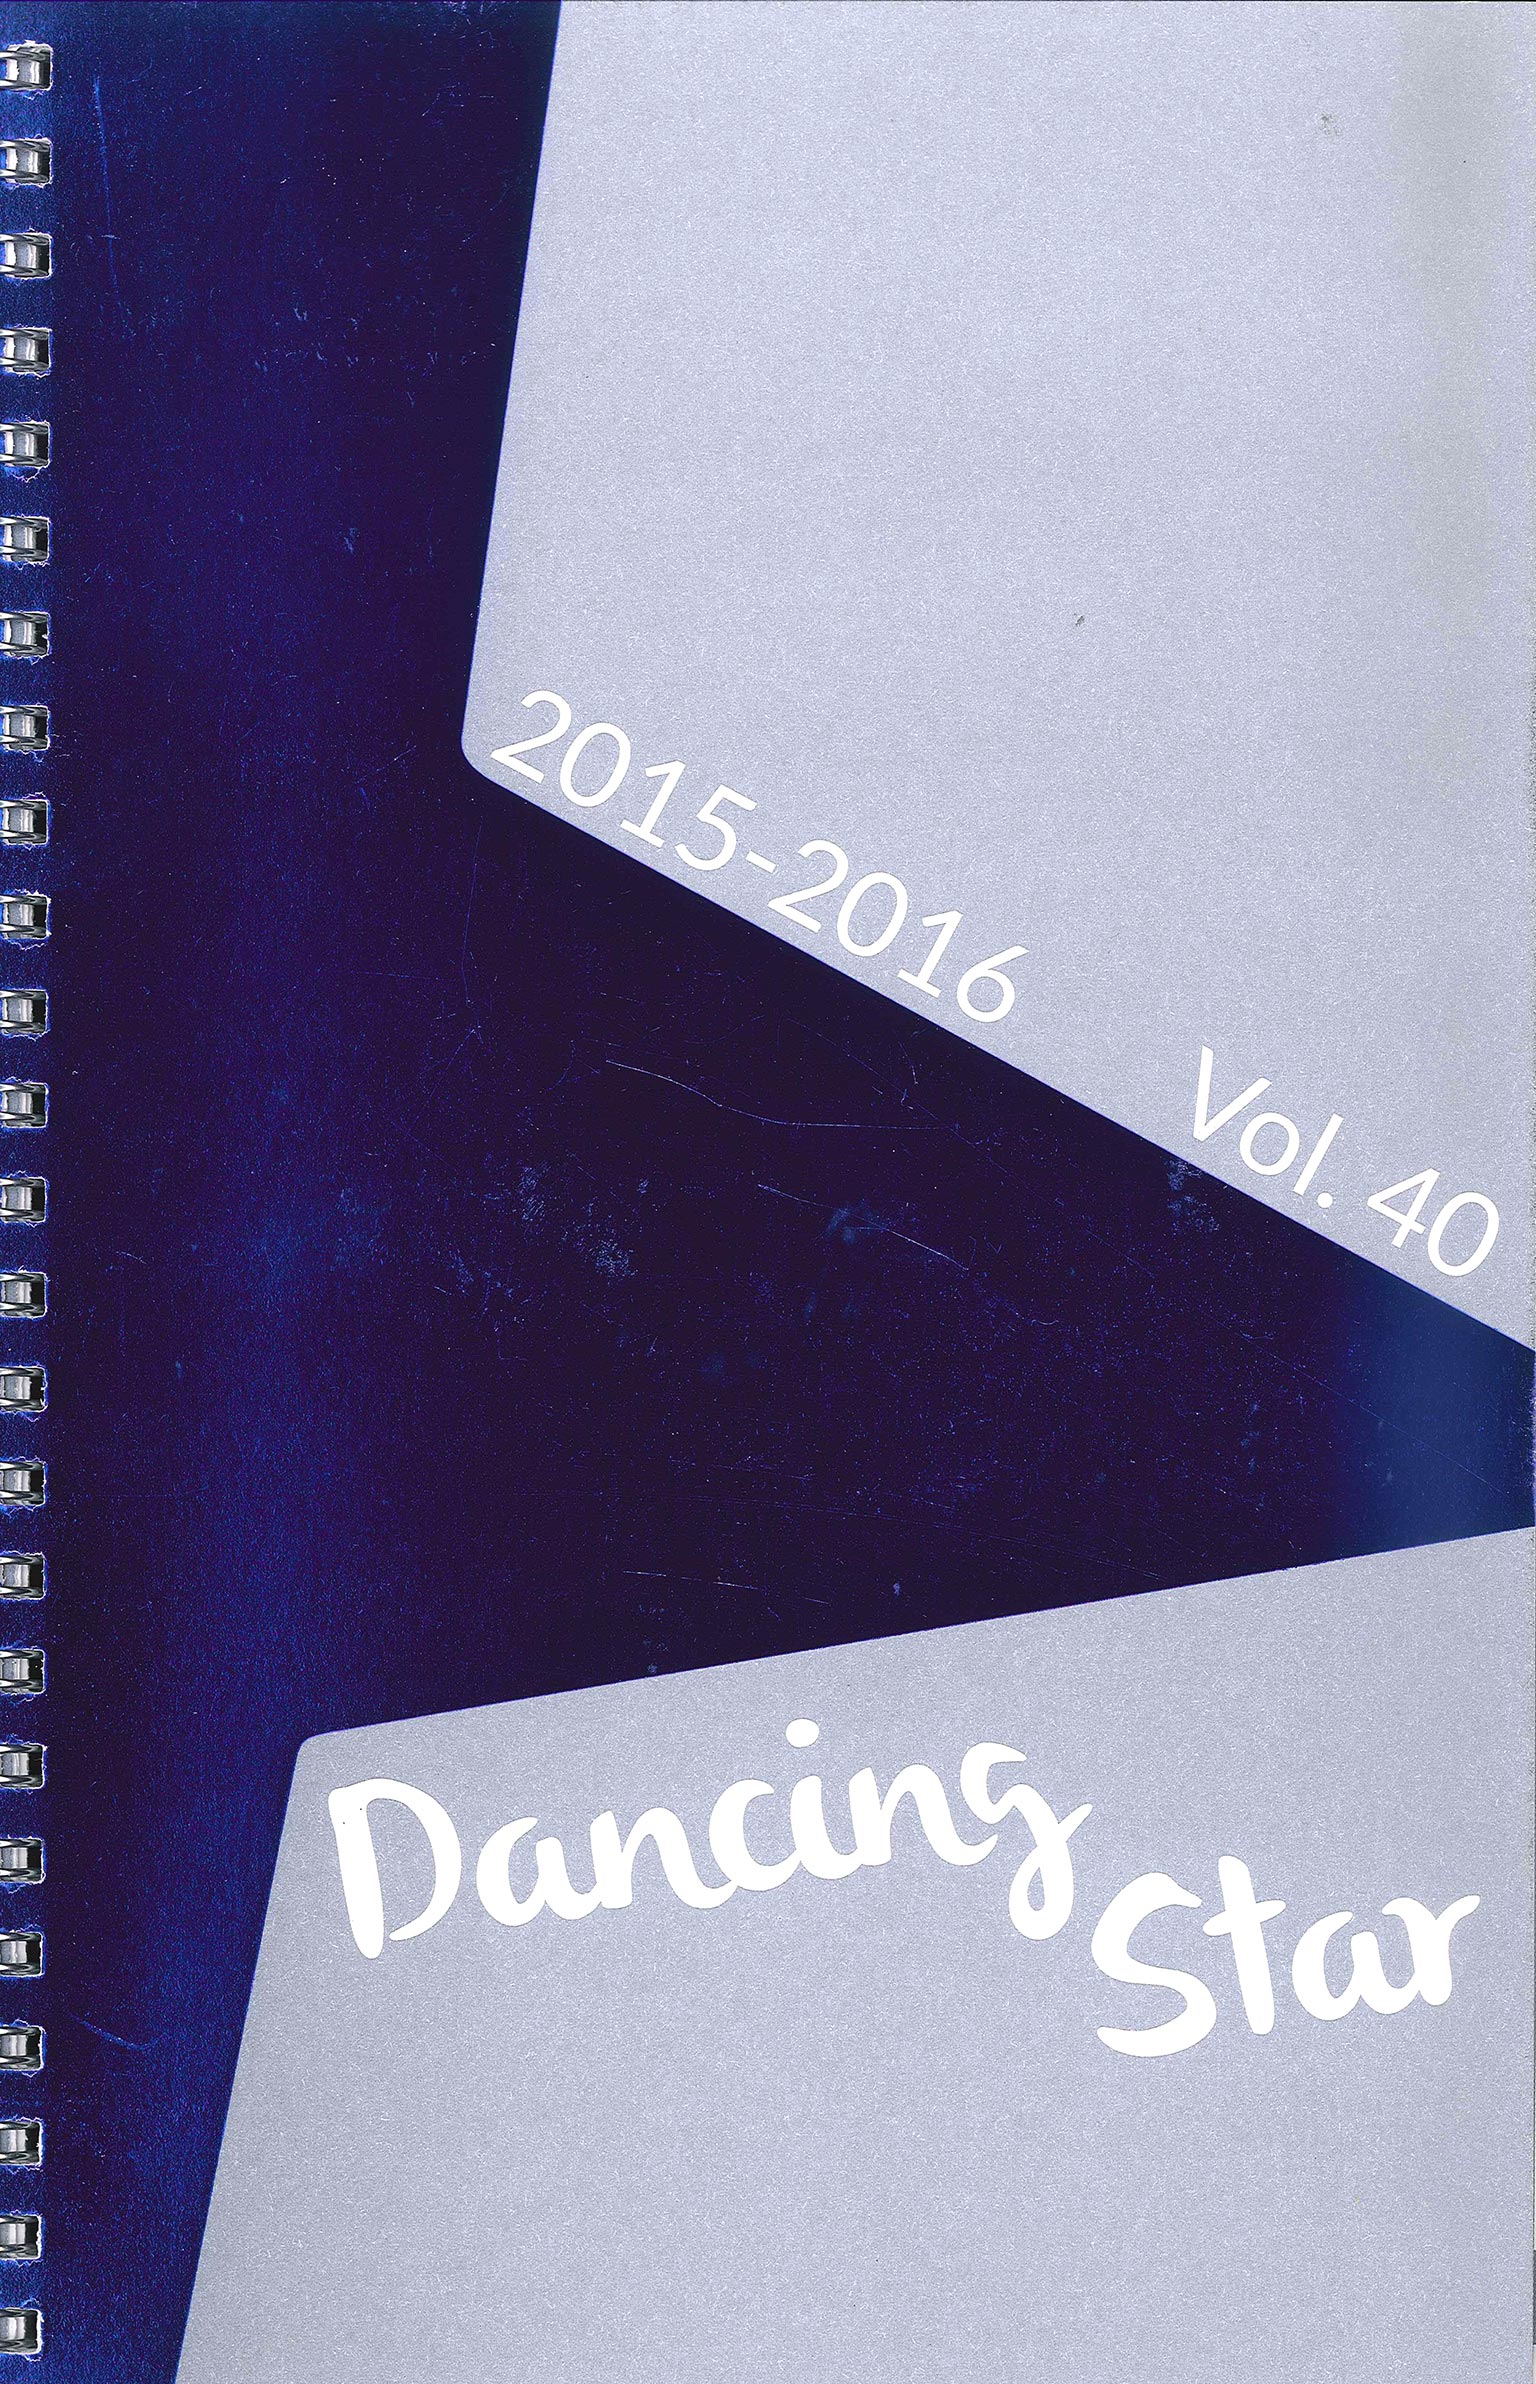 Dancing Star 2015 cover